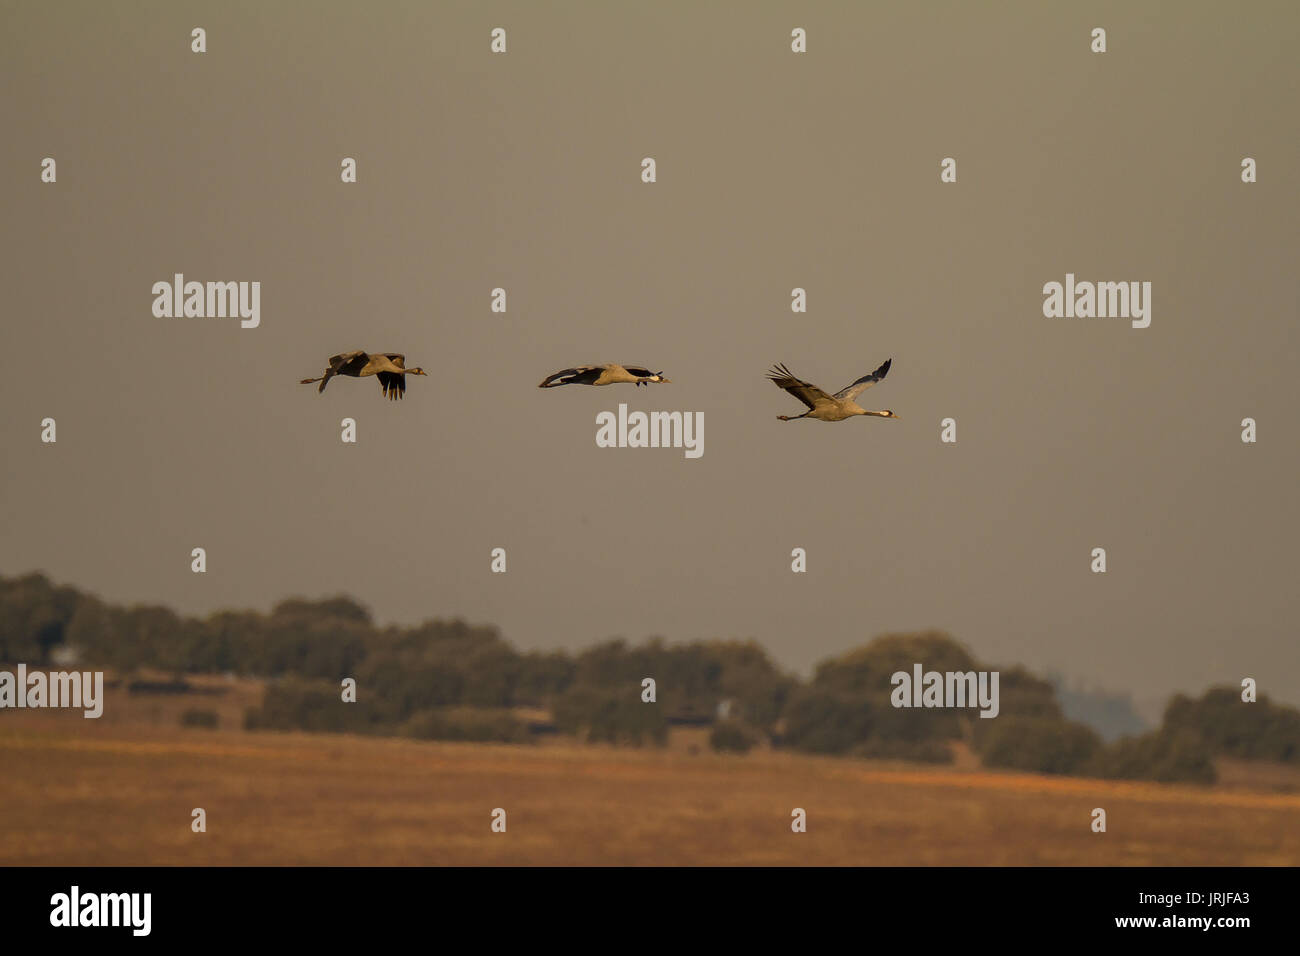 3 Common Cranes flying Stock Photo